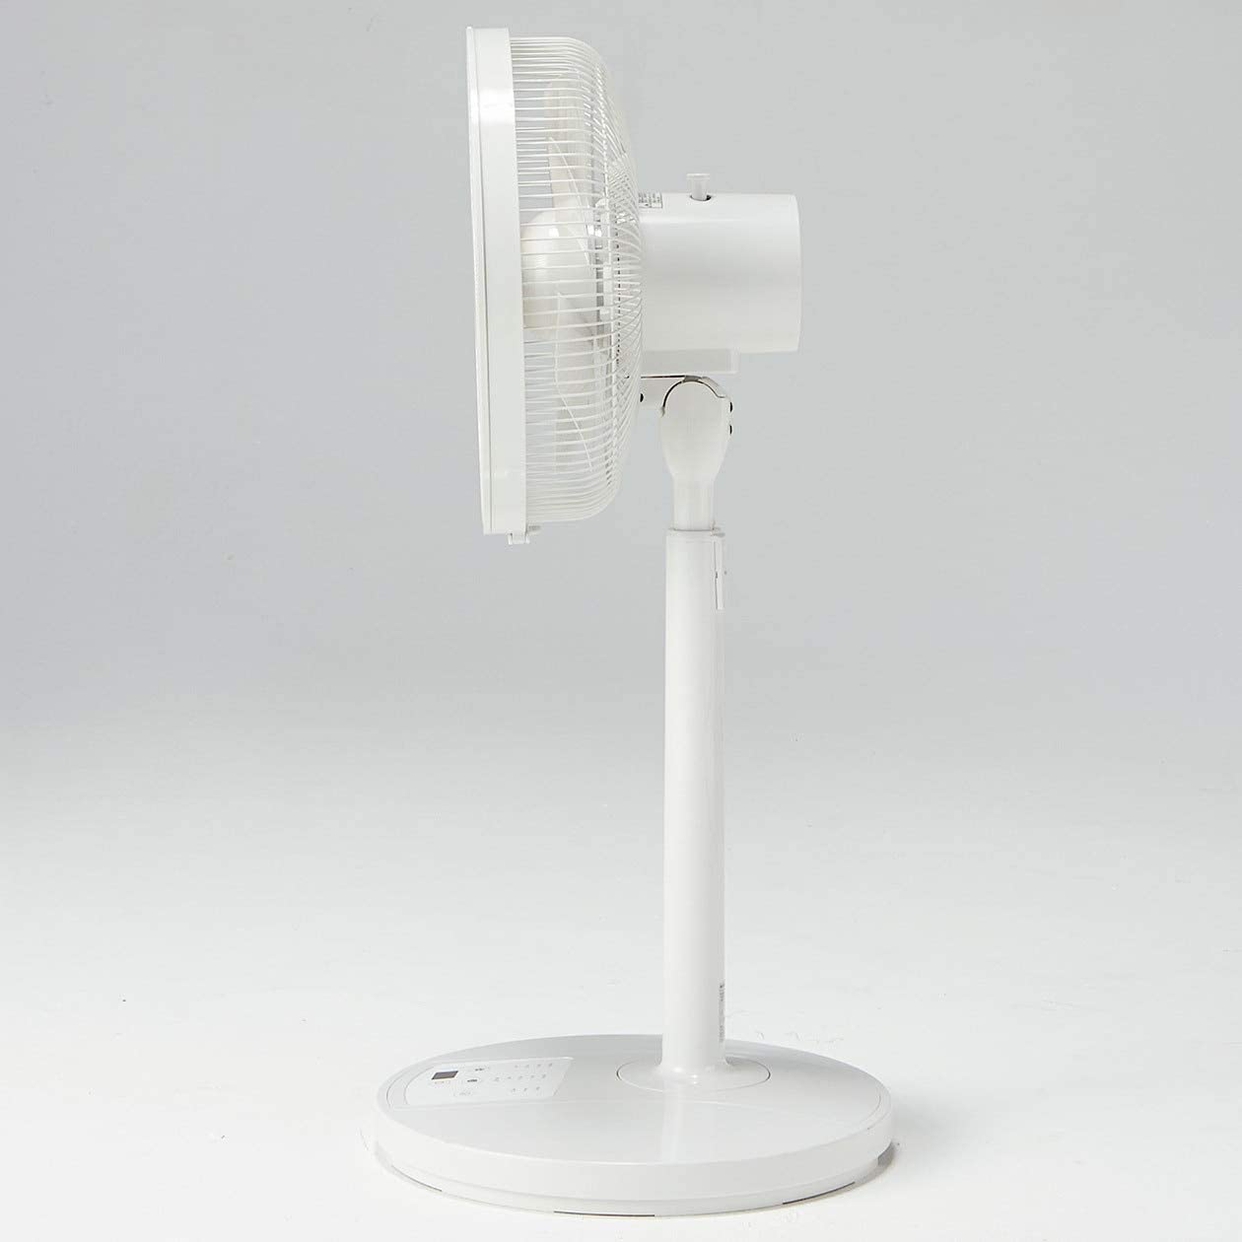 無印良品(MUJI) 扇風機・リモコン付（低騒音ファン・サーキュレーションタイプ）ハイポジション R30M-HRB-Wの商品画像4 